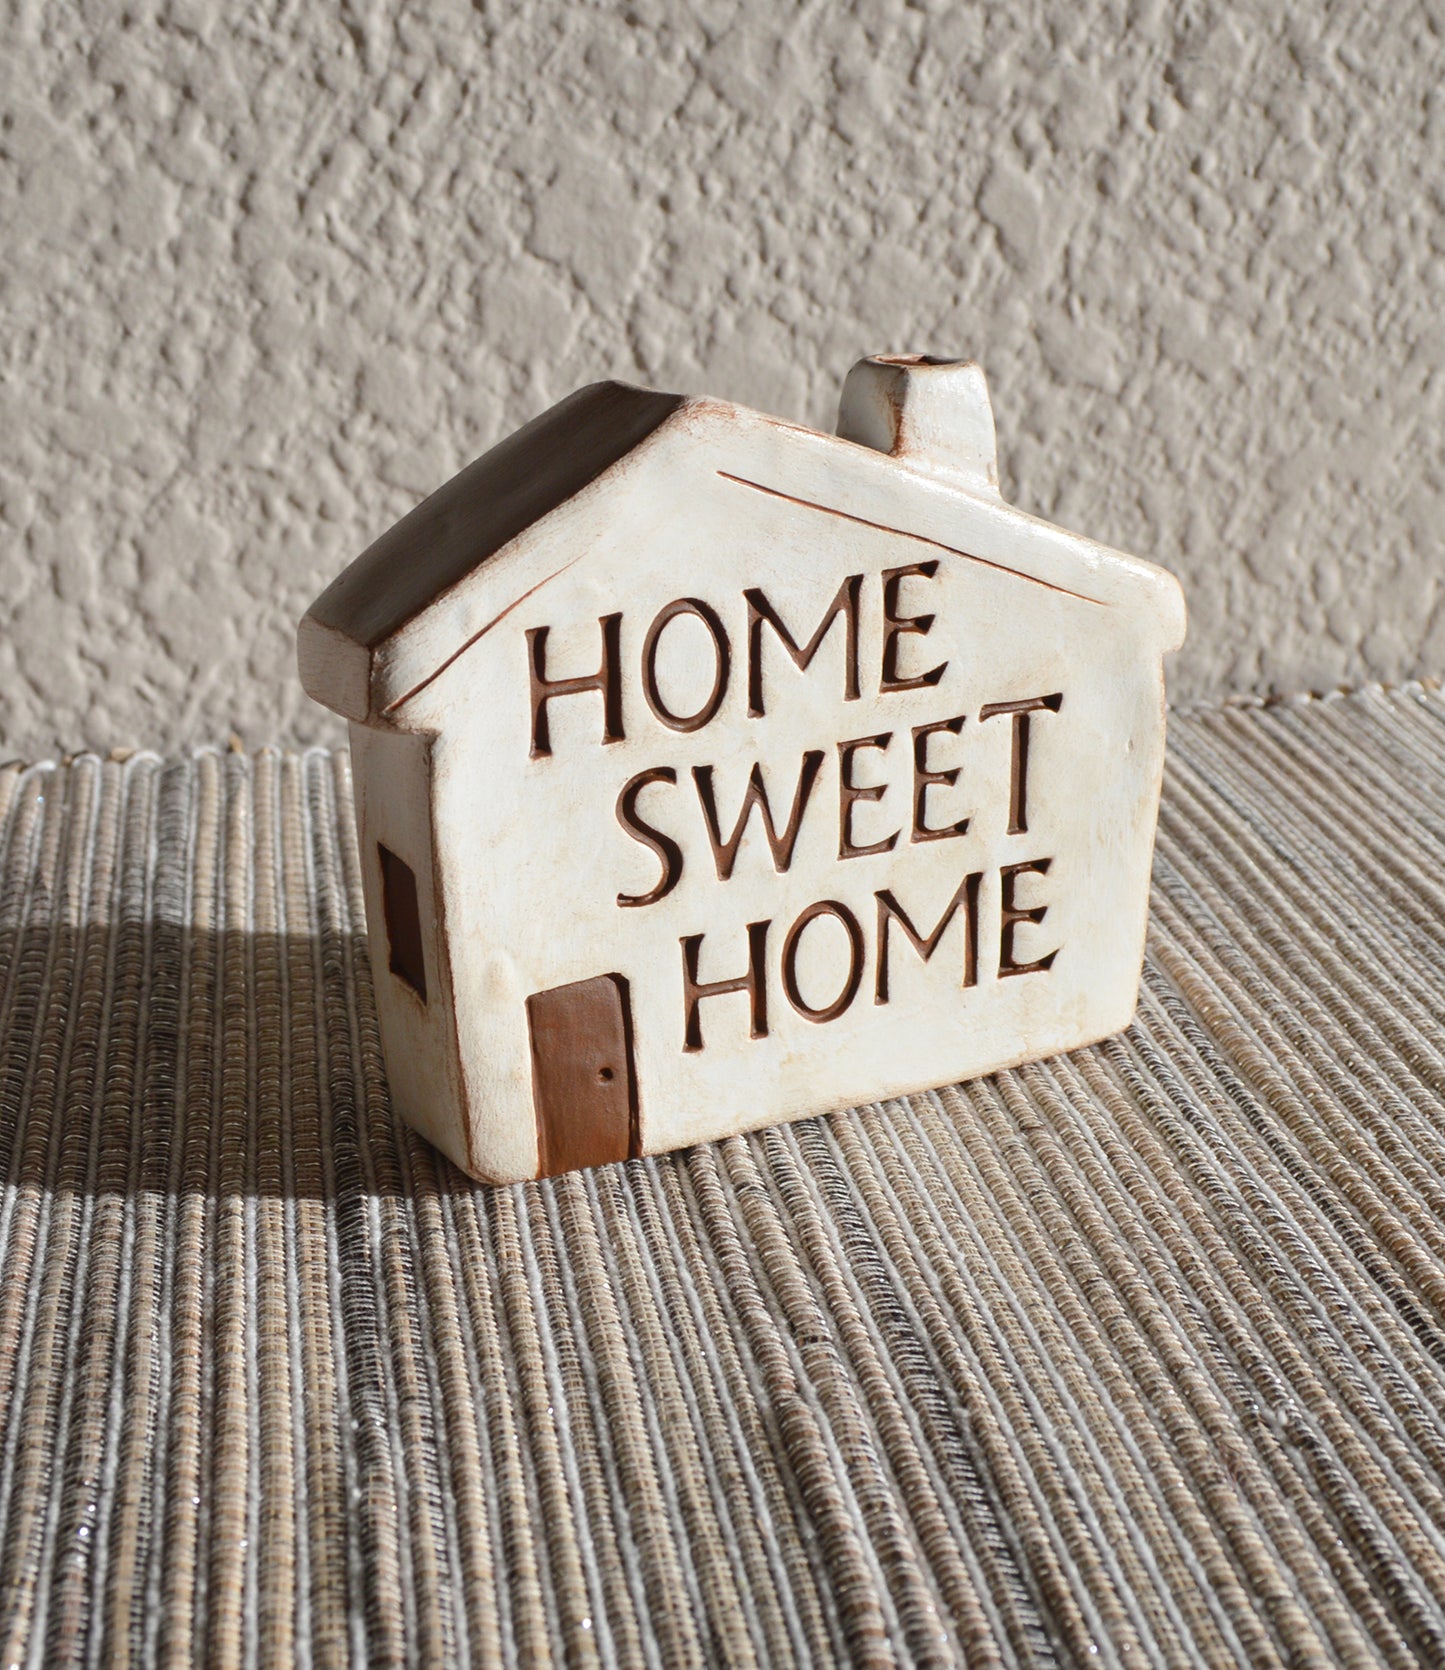 Home Sweet Home - Single House